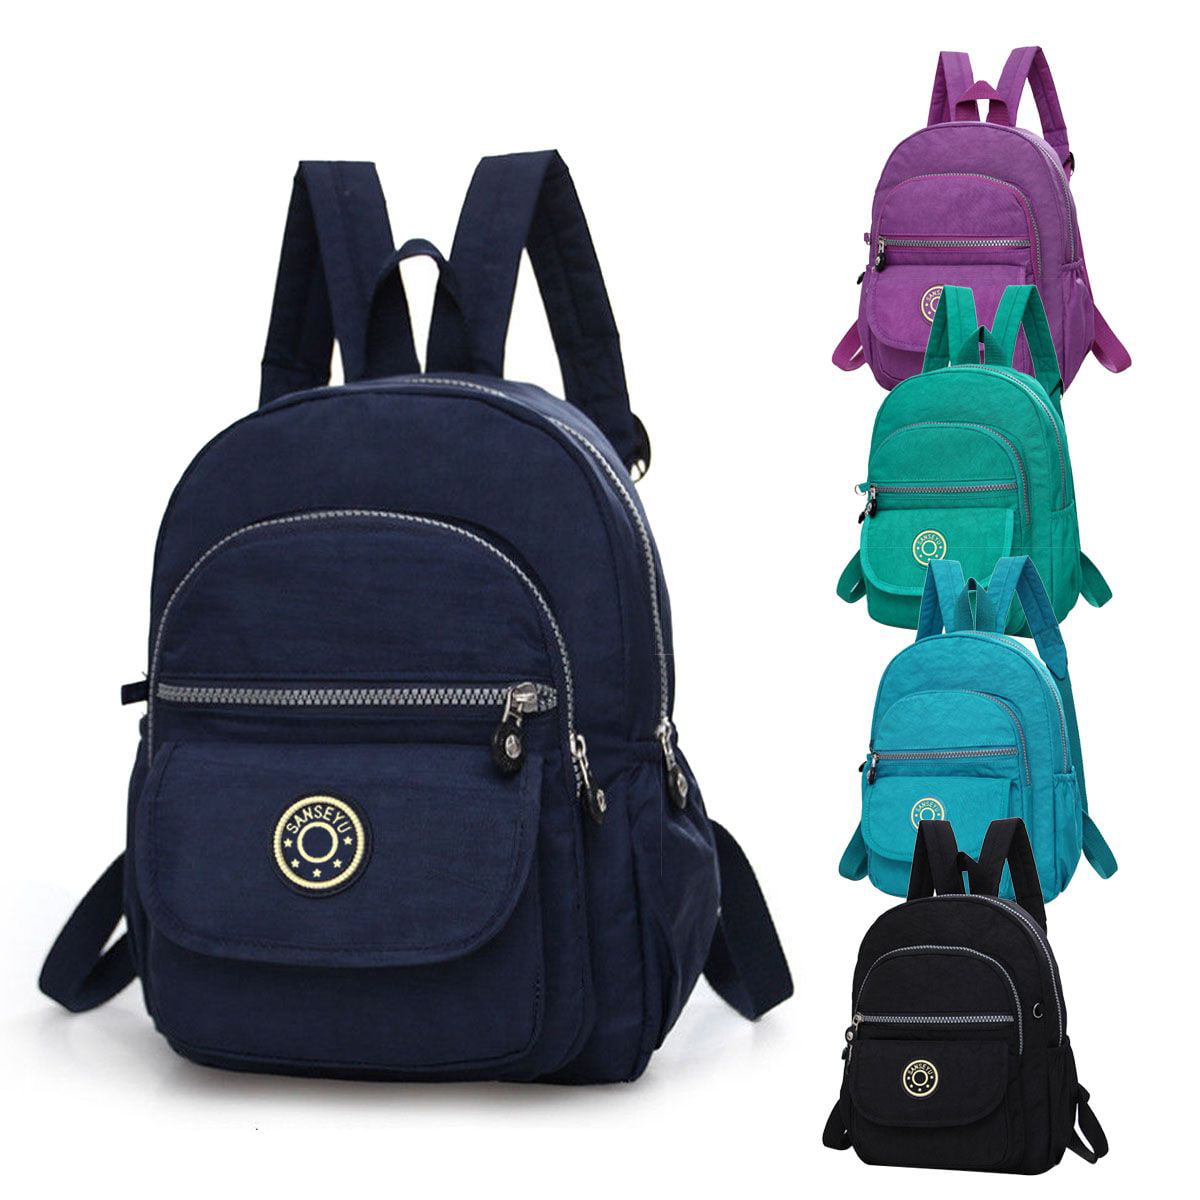 blue travel backpack bag